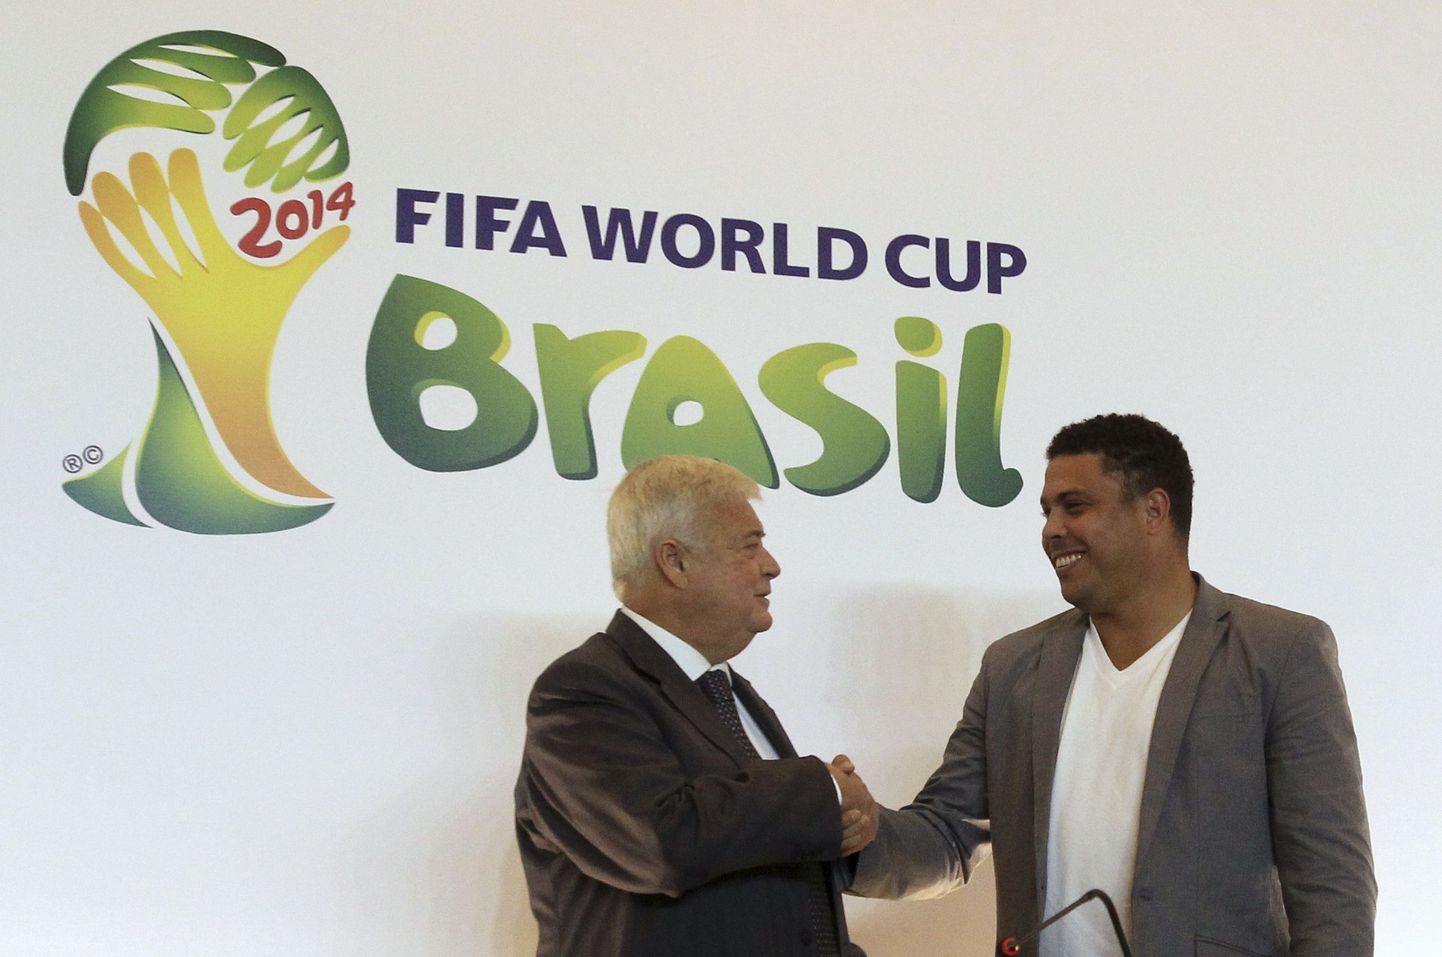 Звезда мирового футбола Роналдо участвует в подготовке ЧМ-2014, который пройдет в Бразилии.